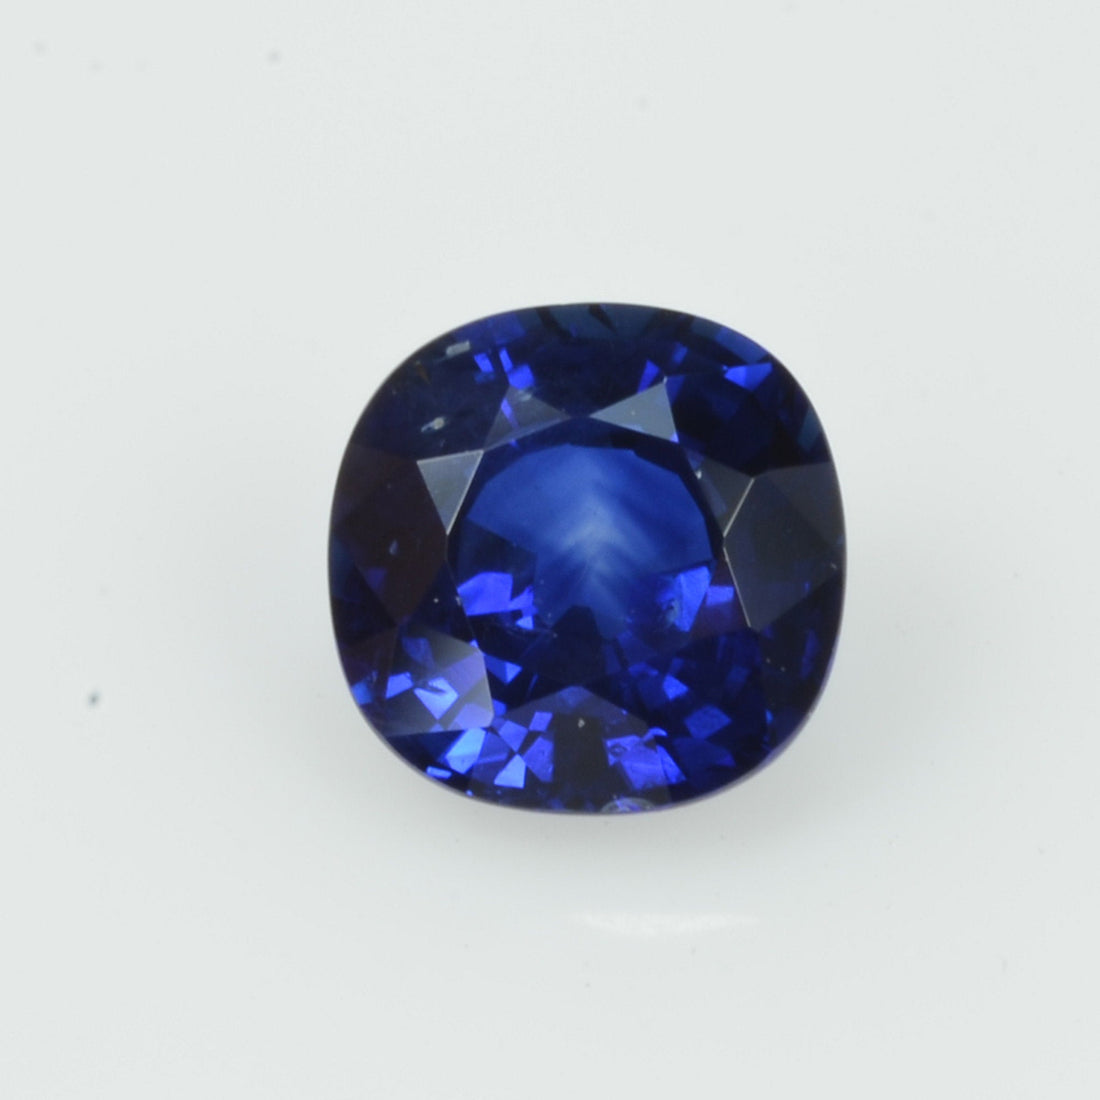 1.08 cts Natural Blue Sapphire Loose Gemstone Cushion Cut - Thai Gems Export Ltd.